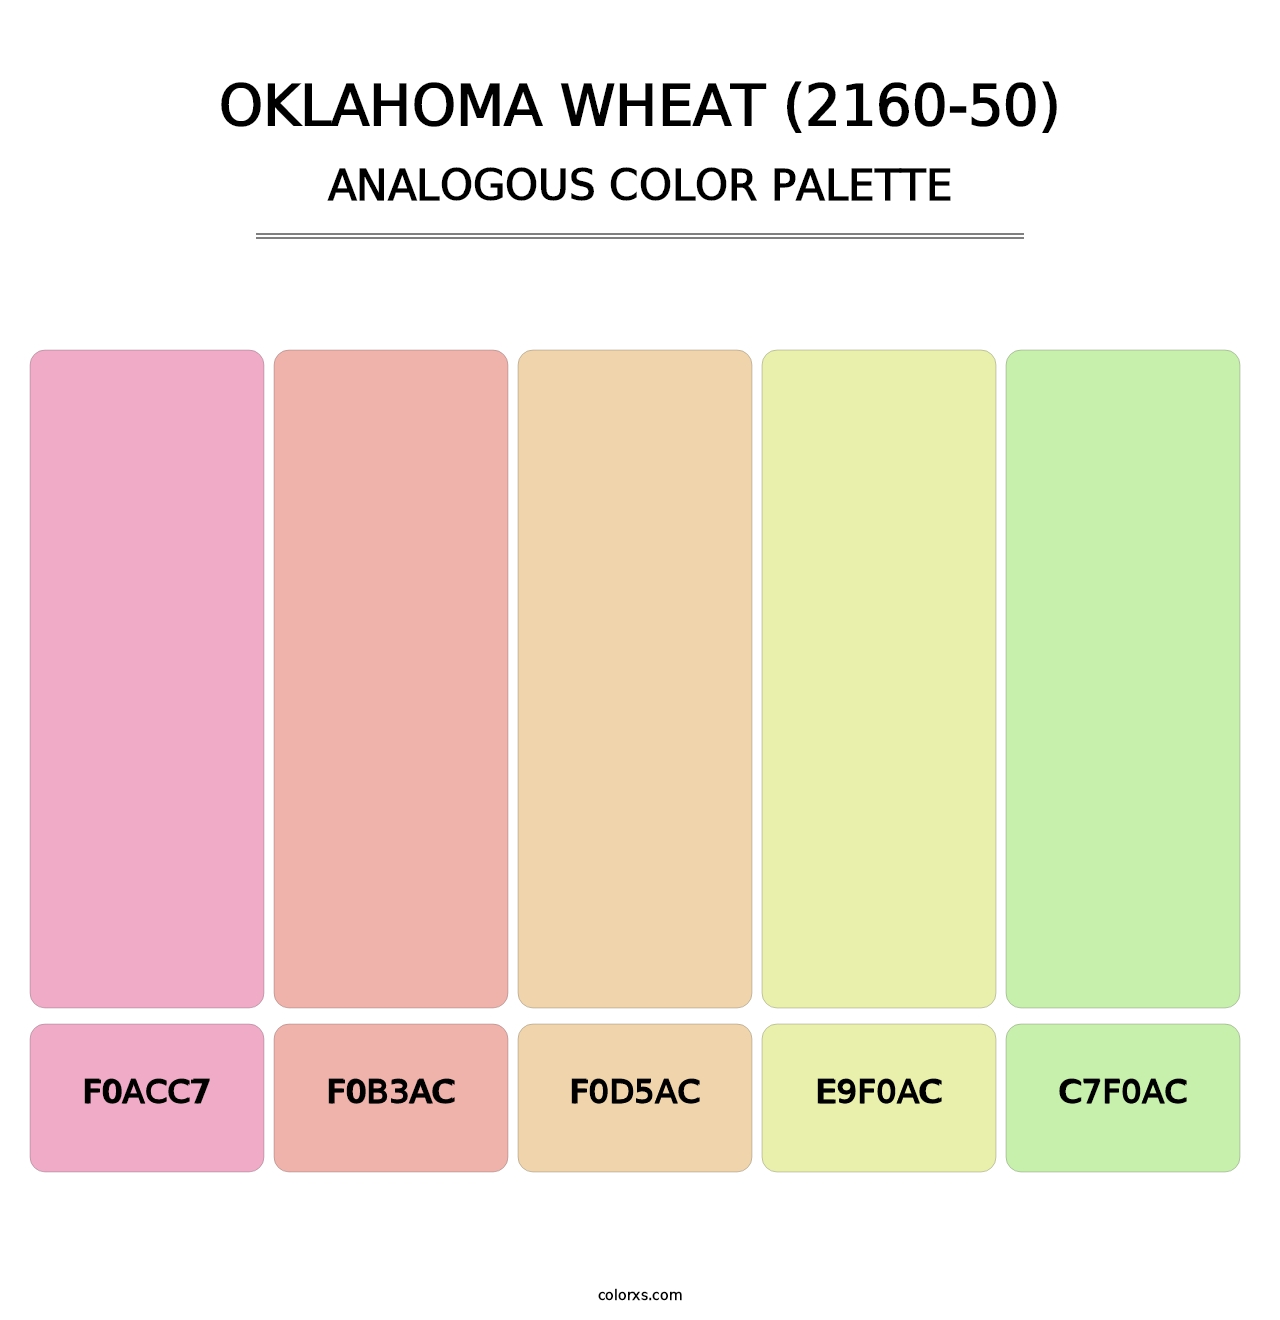 Oklahoma Wheat (2160-50) - Analogous Color Palette